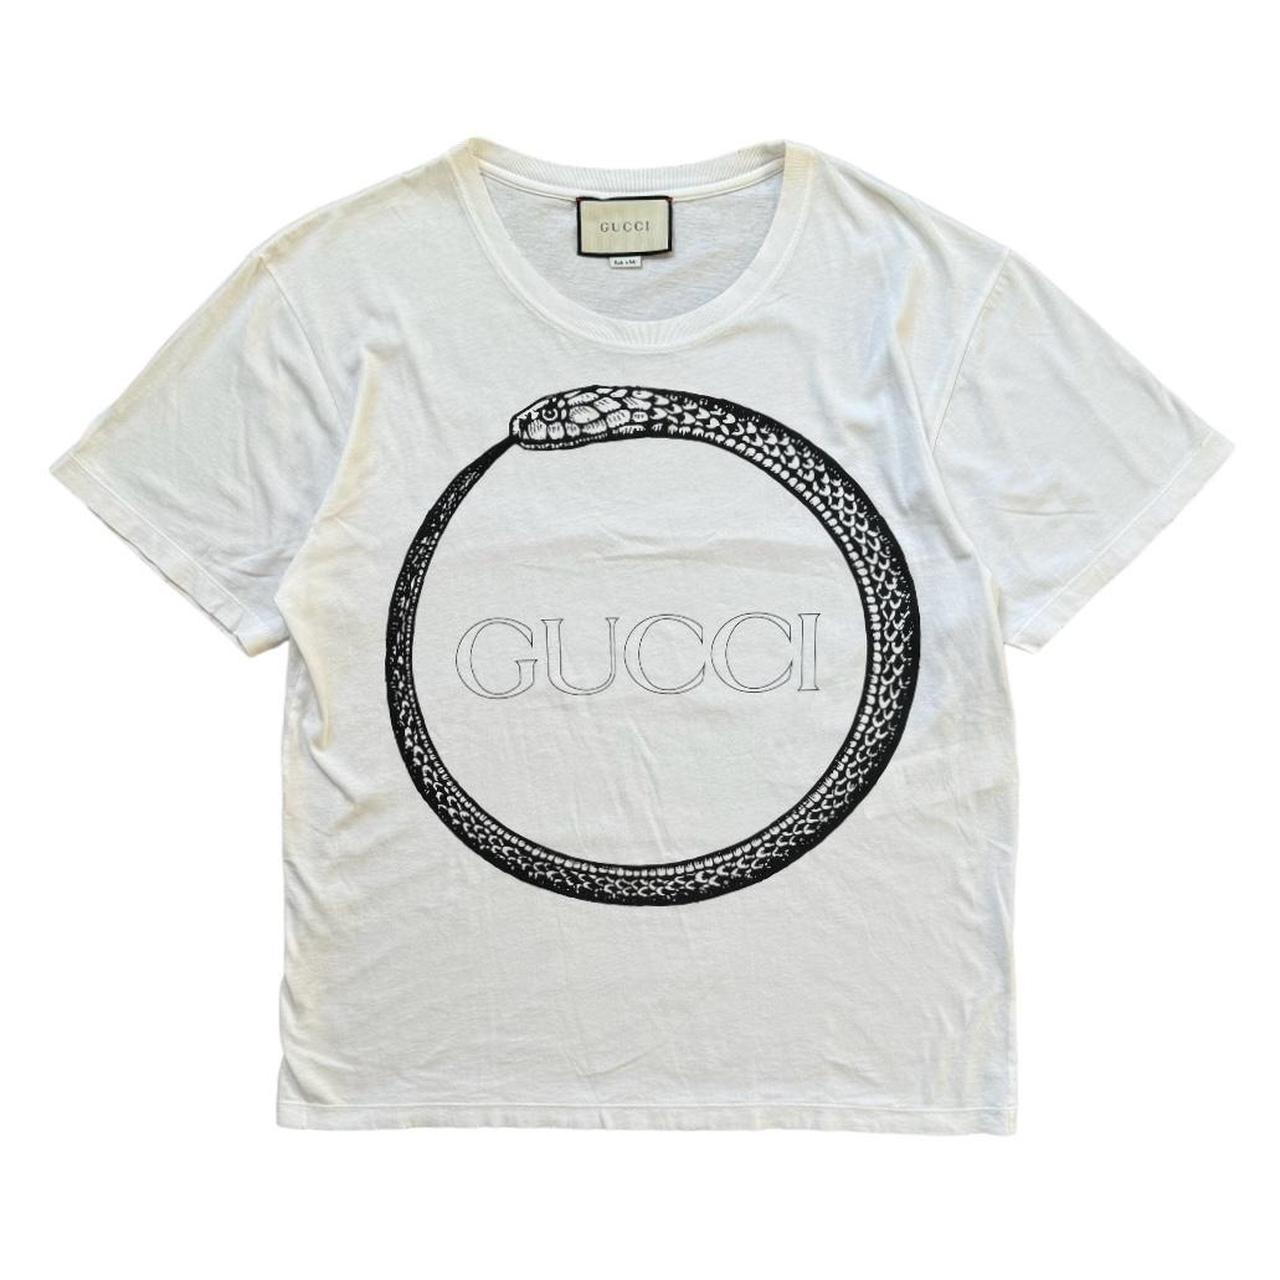 Gucci Men's White T-shirt